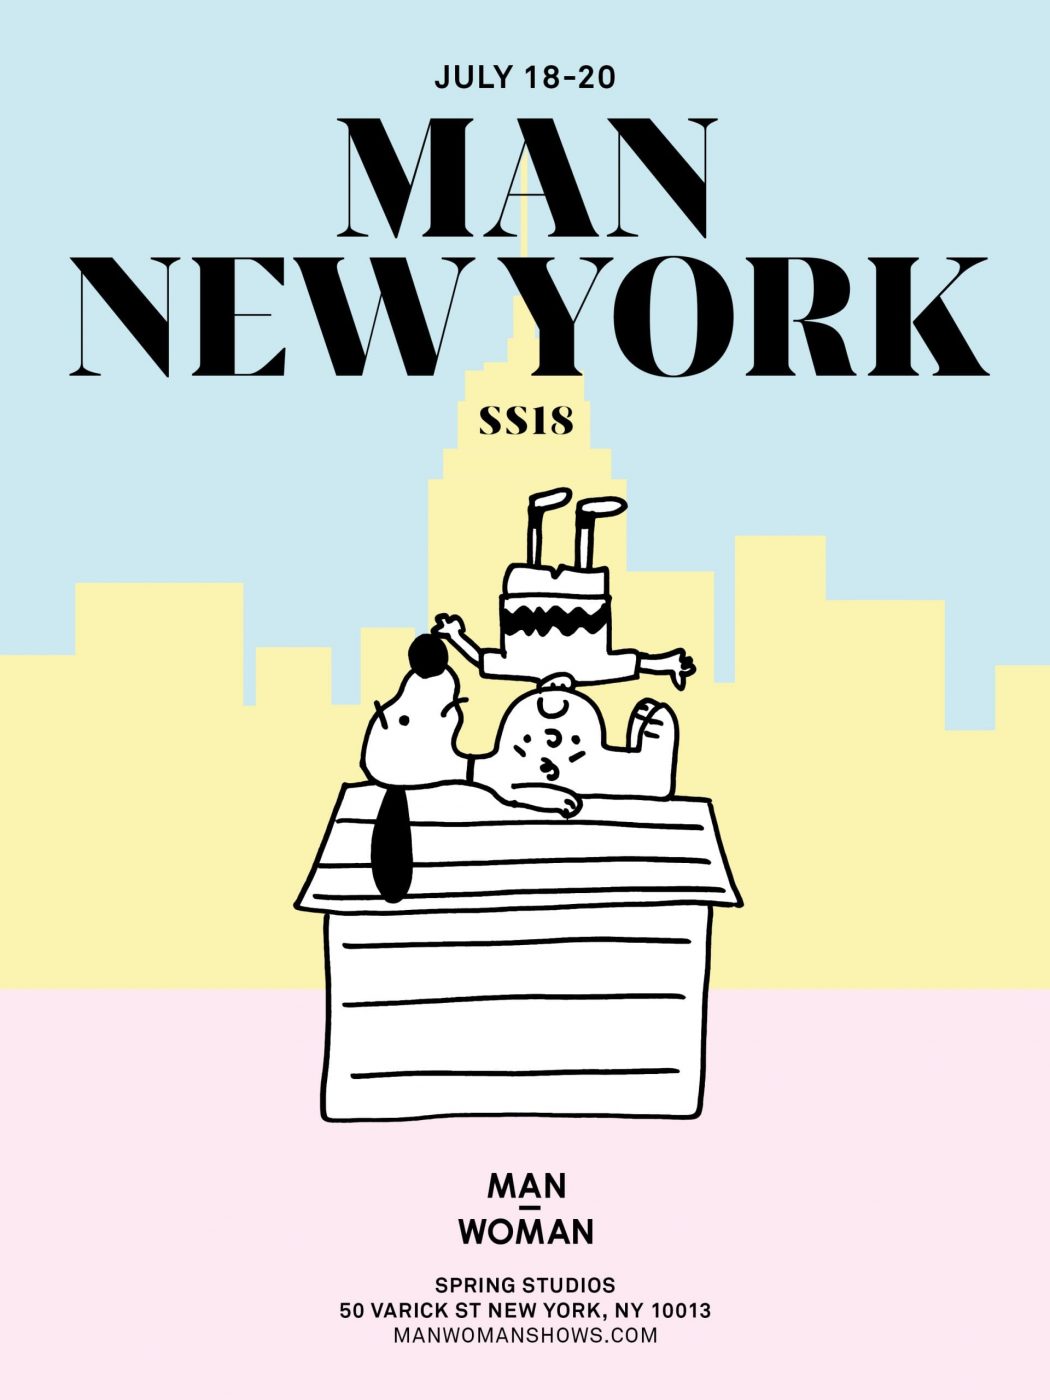 INVITATION NEW YORK MAN SS18 Spring